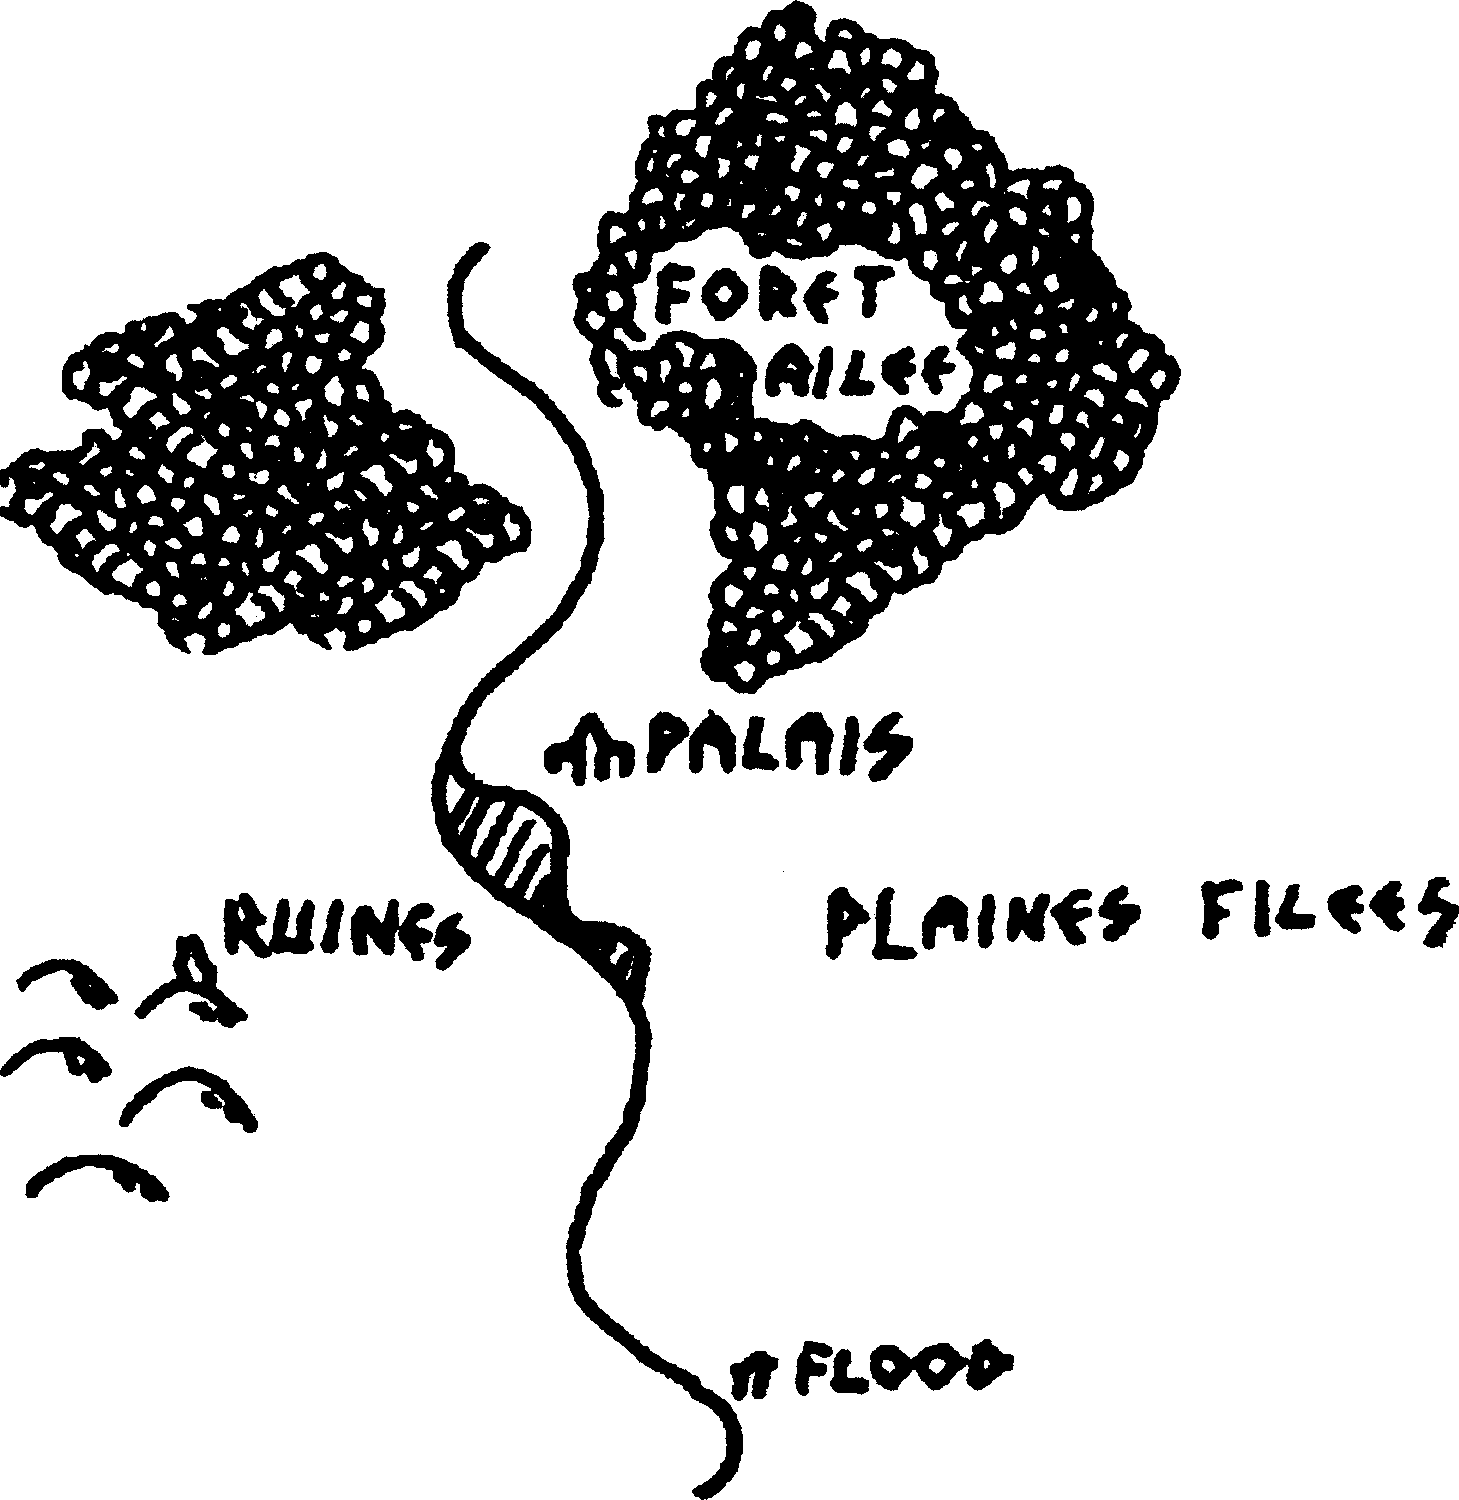 Carte avec un Palais au centre, des ruines à l'Est, les planes filées à l'est et une rivière, l'Aile qui va du nord au sud, au nord se trouve une forêt, au sud le village de Flood